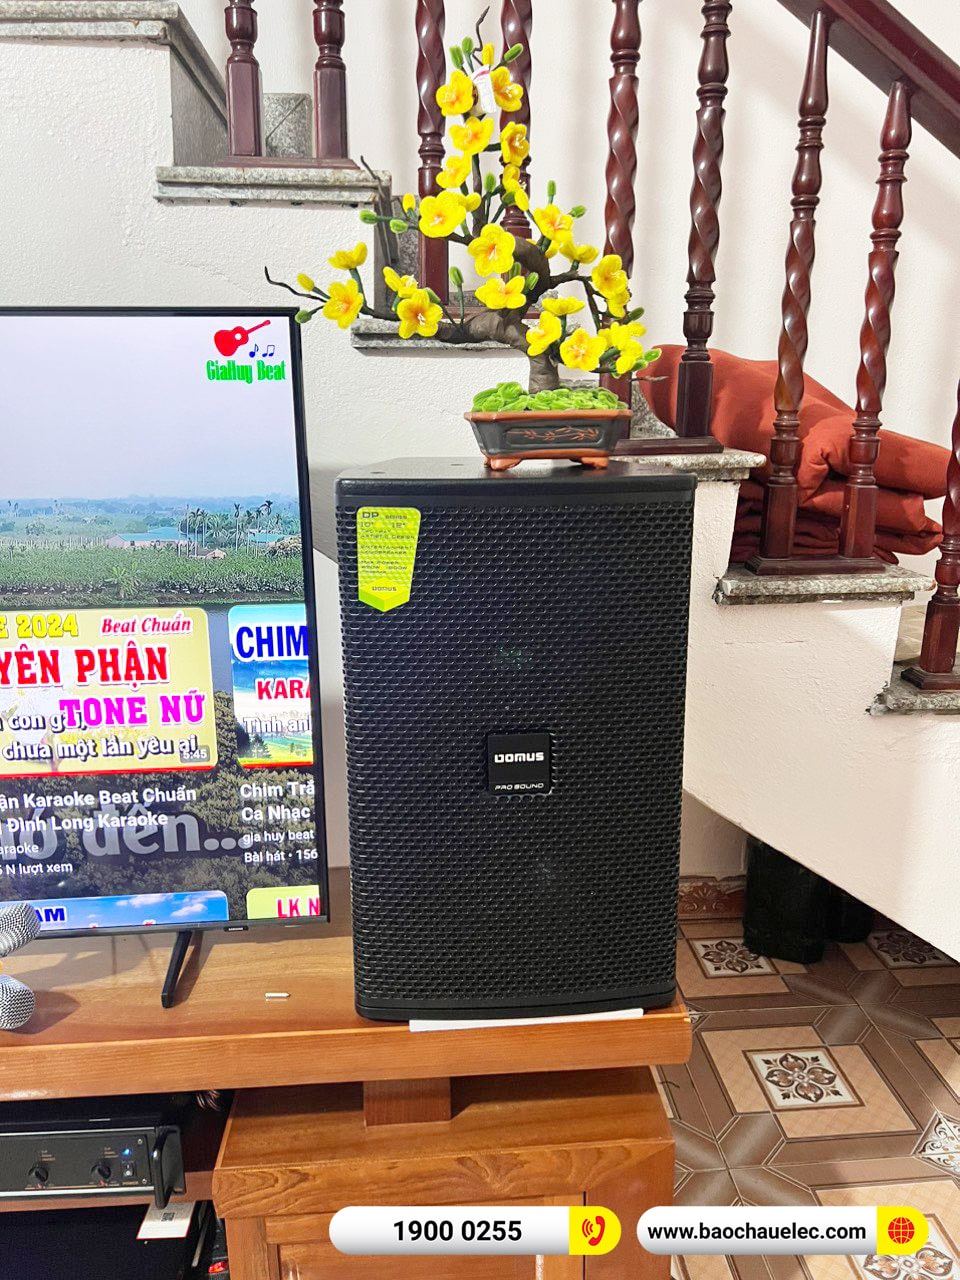 Lắp đặt dàn karaoke Domus hơn 33tr cho chị Thu tại Bắc Ninh (DP6120 Max, VM620A, DSP-9000 Plus, SW715, U900 Plus X) 